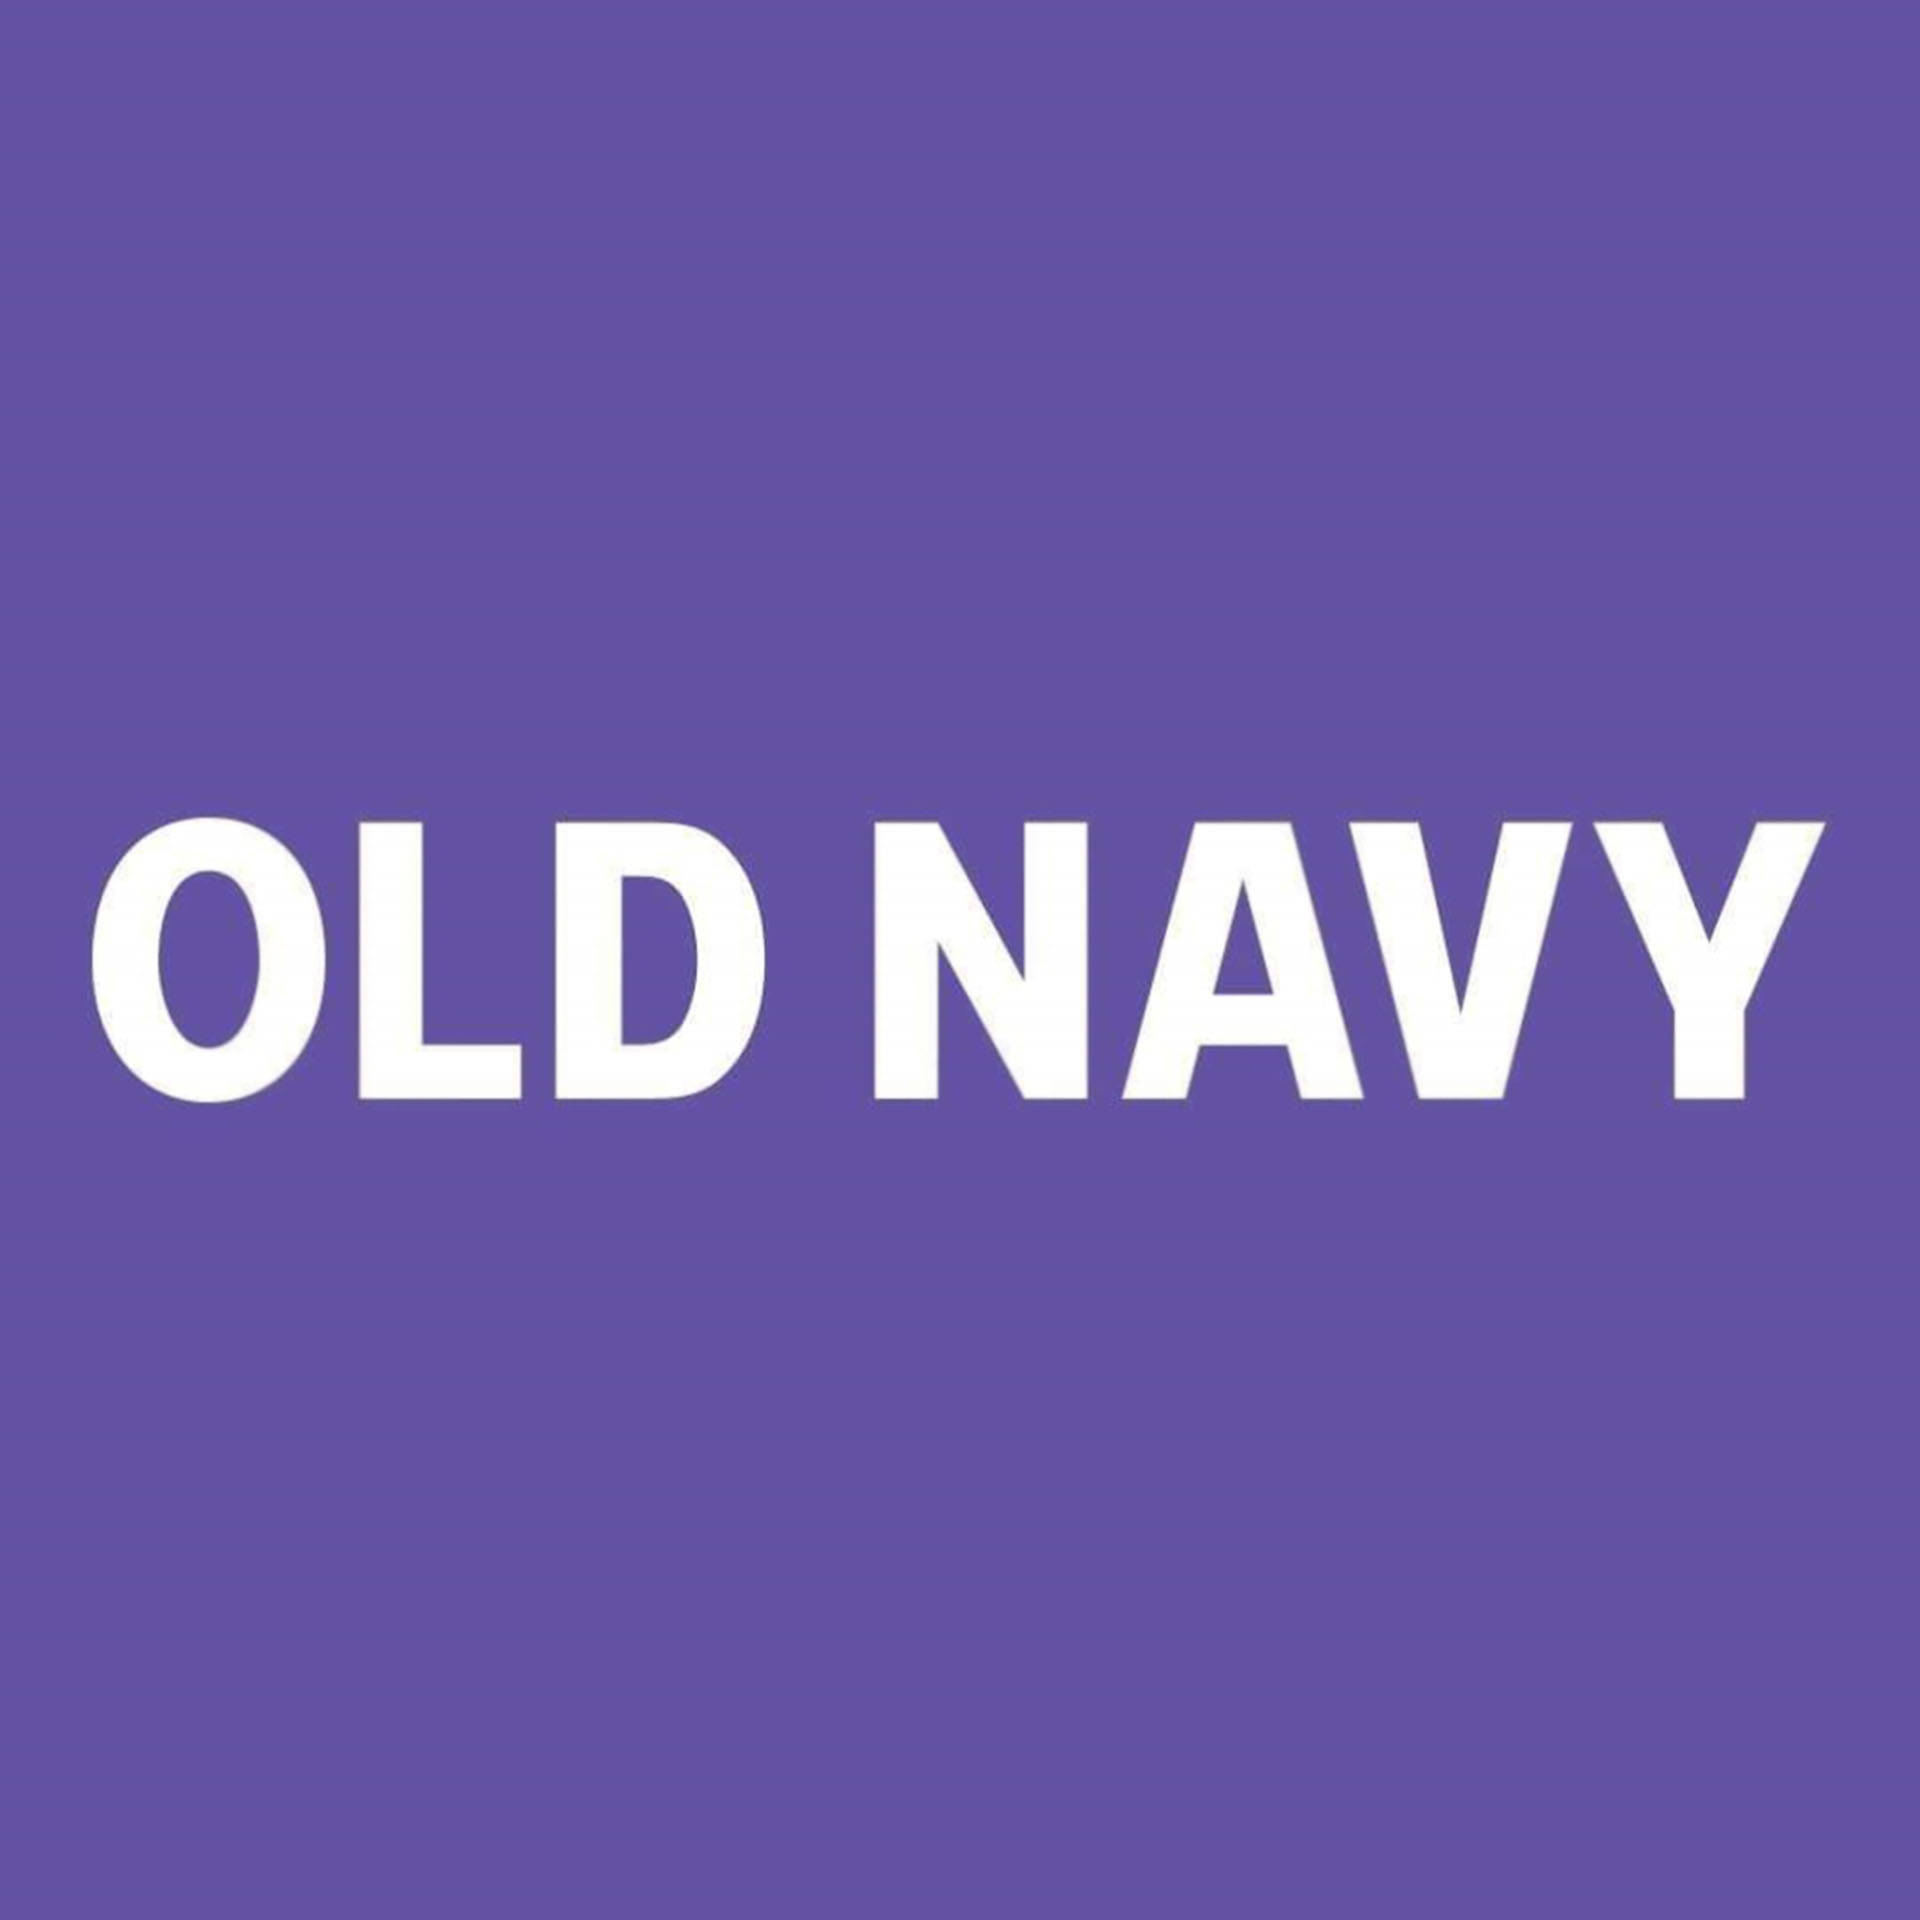 Logode Old Navy Con Fondo Morado Fondo de pantalla